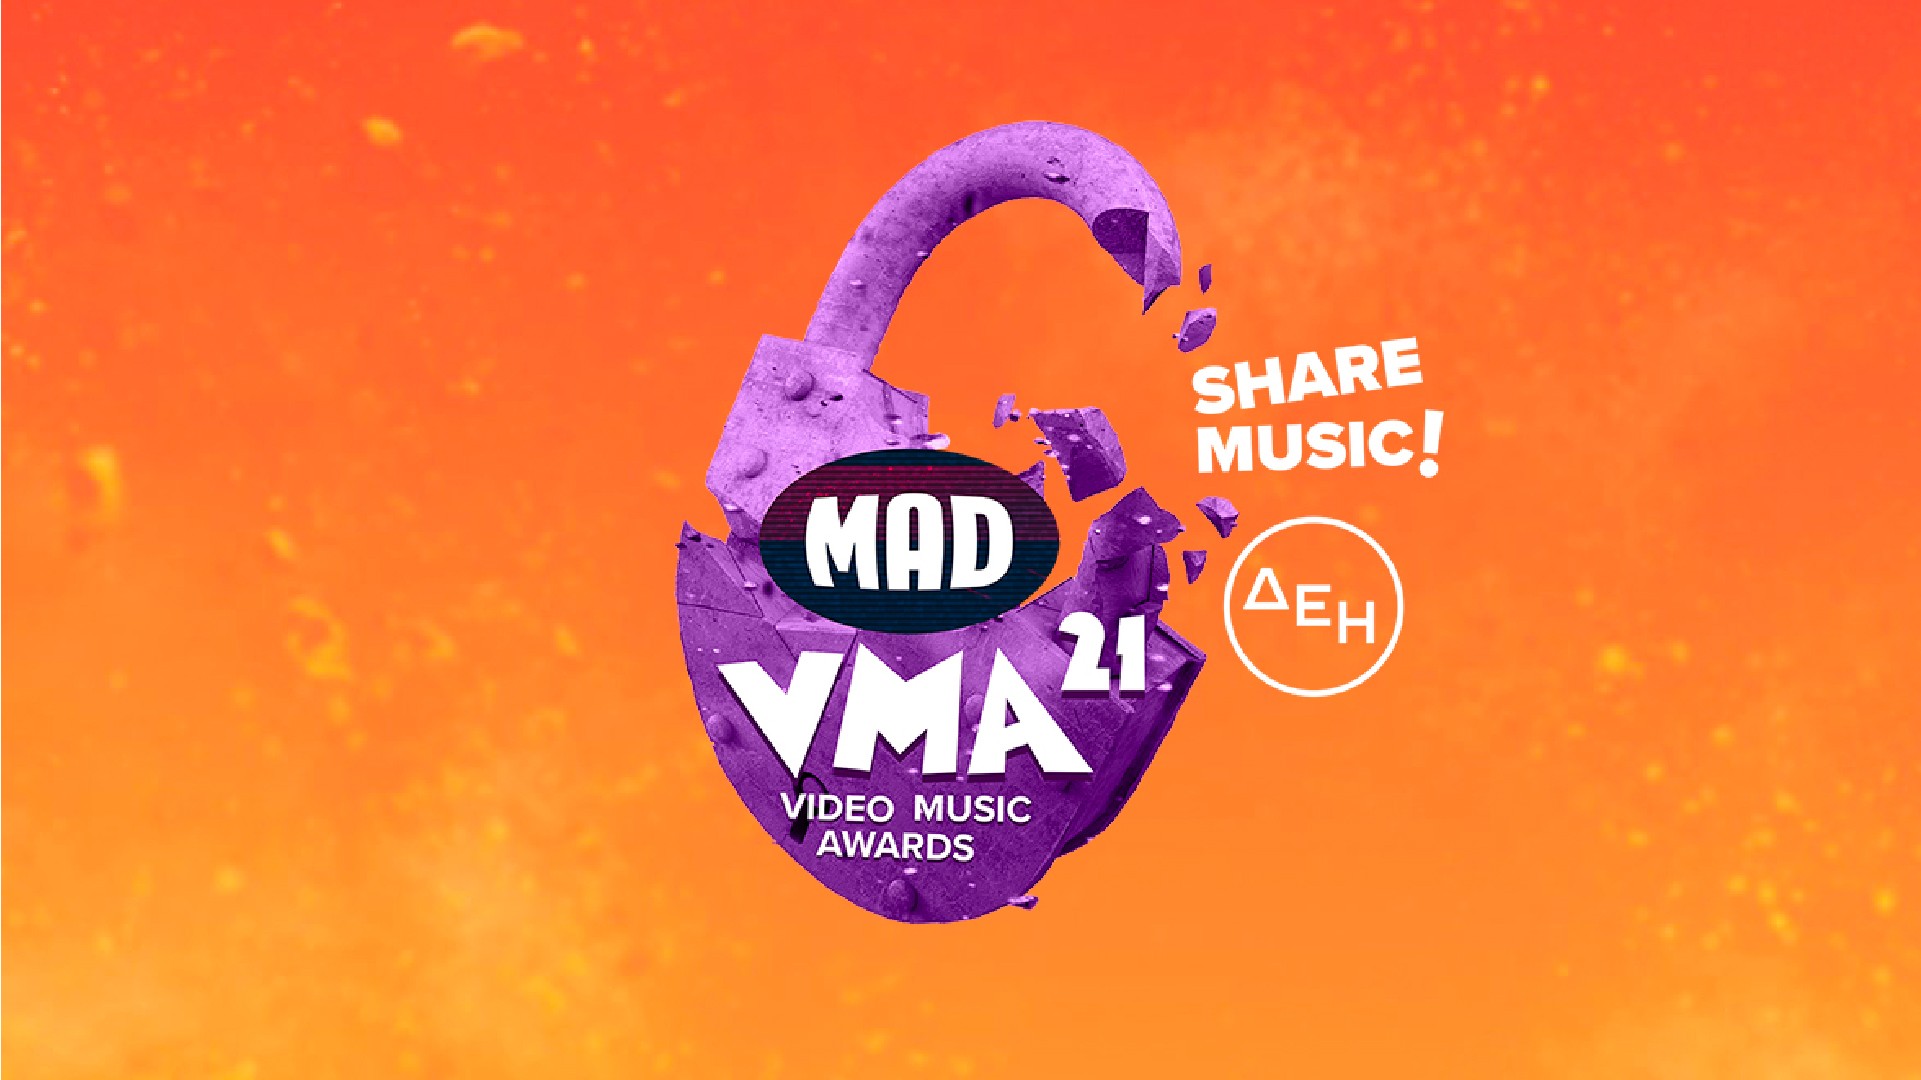 MAD - VMA